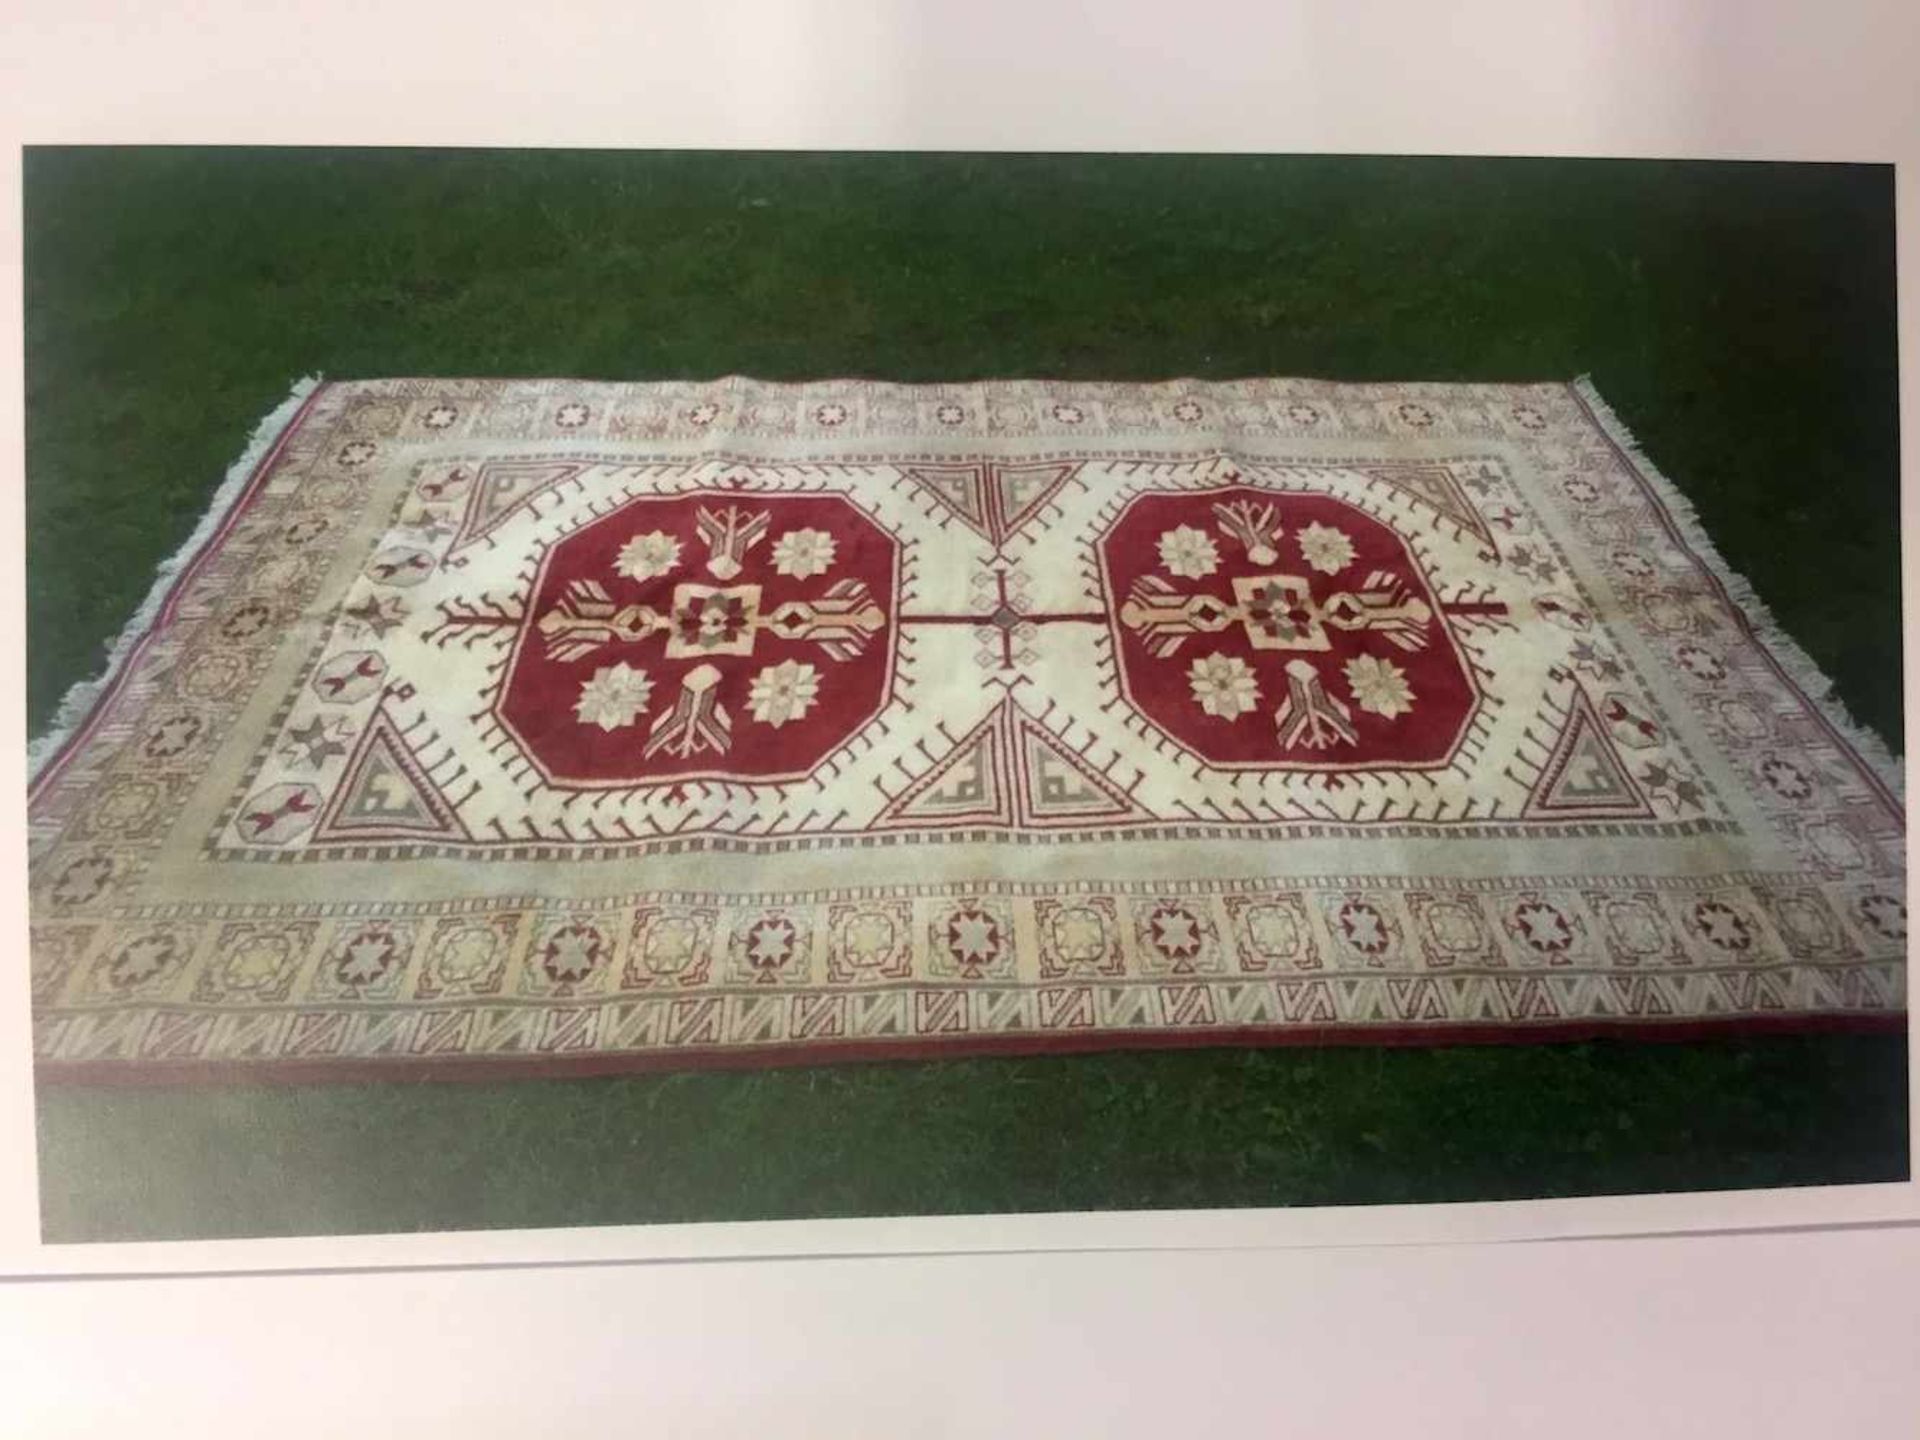 Großer eleganter Teppich: Handgeknüpft, 1,95 x 2,95 m.Wolle auf Wolle, Fransenkanten, creme-farbener - Bild 2 aus 4